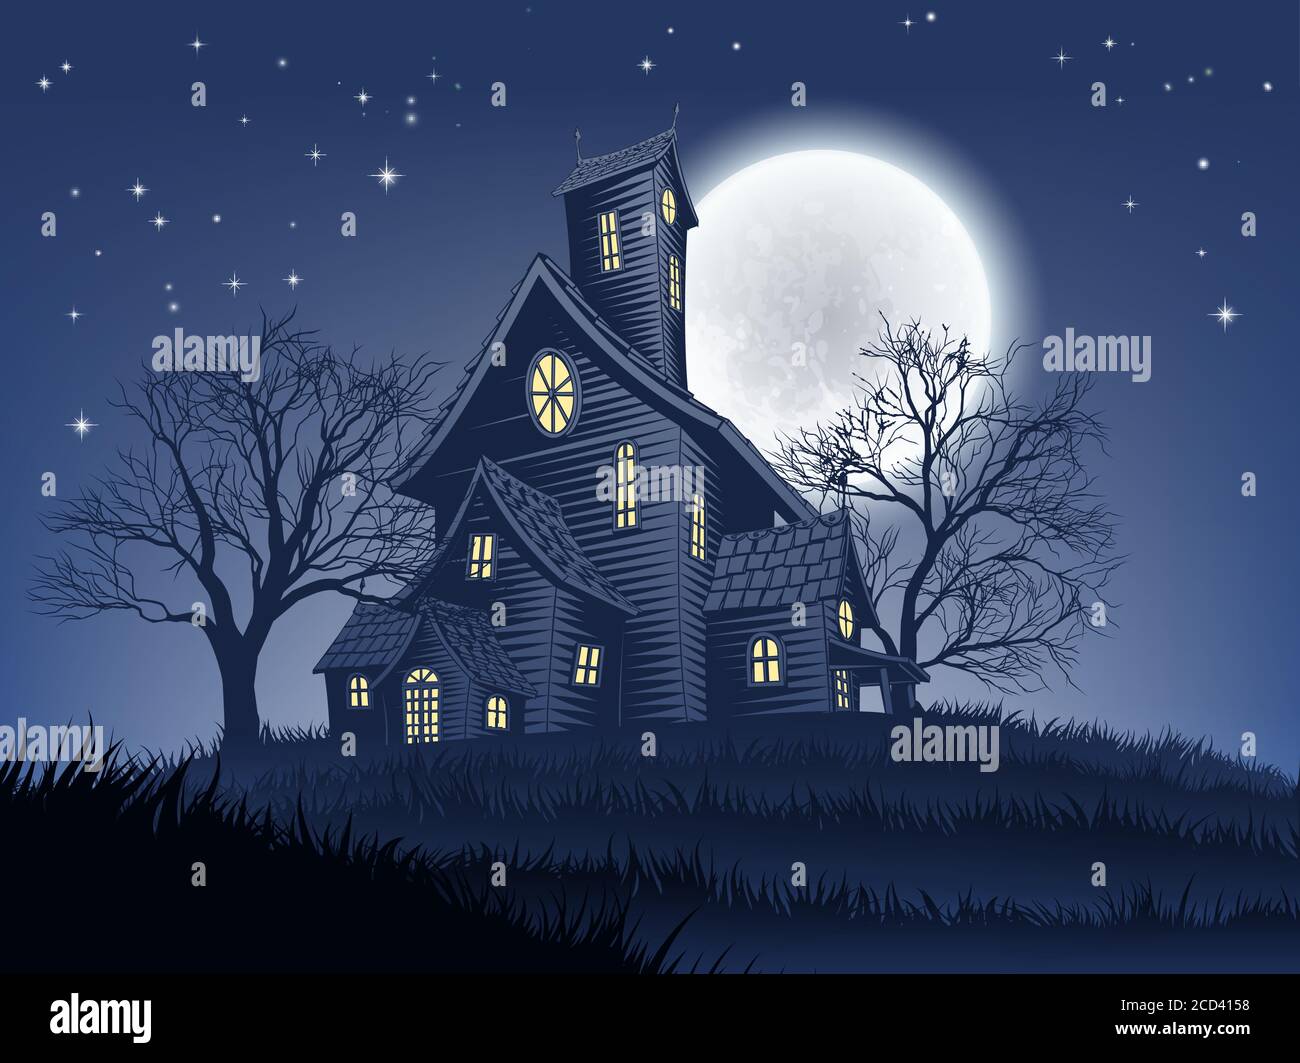 Haunted House Haunt Halloween Background Stock Vector